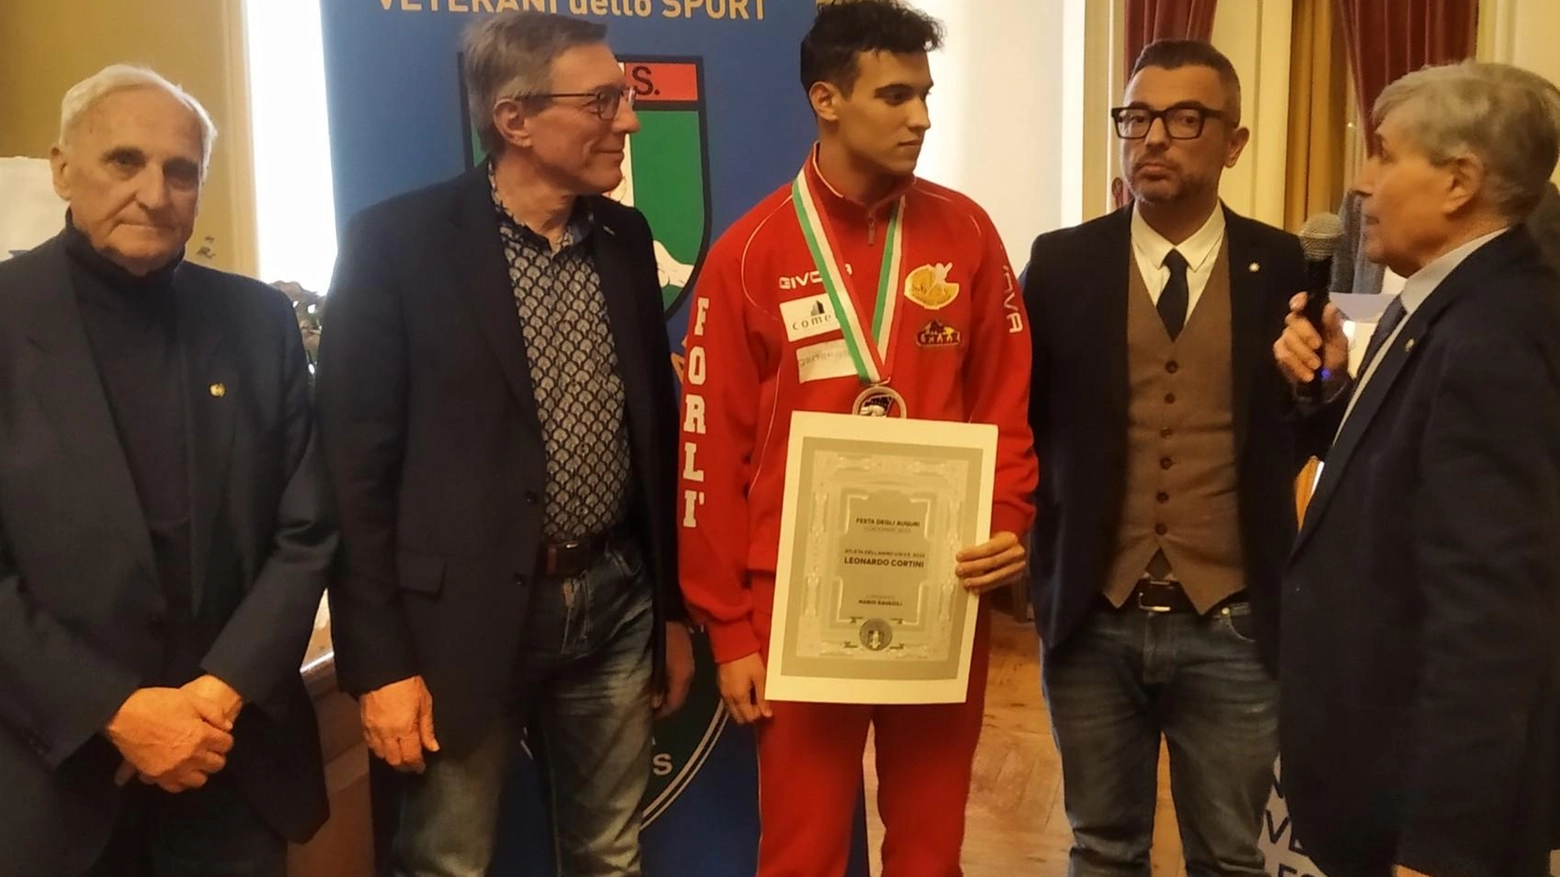 L’Unione Veterani dello Sport assegna il suo premio a Cortini